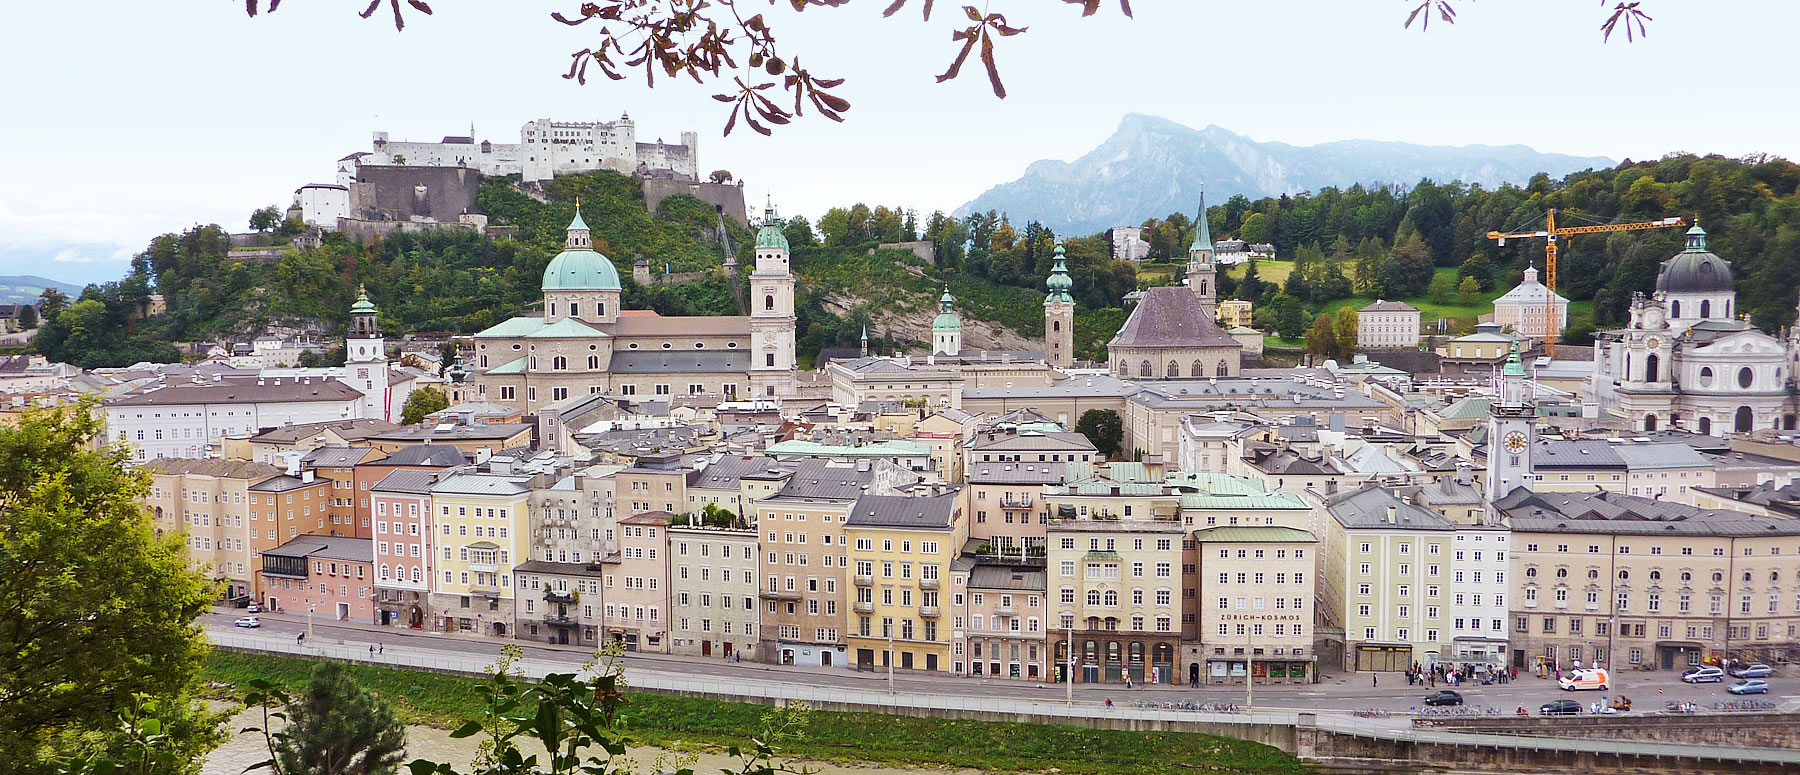 Blick vom Kapuzienerberg auf die Altstadt Salzburg